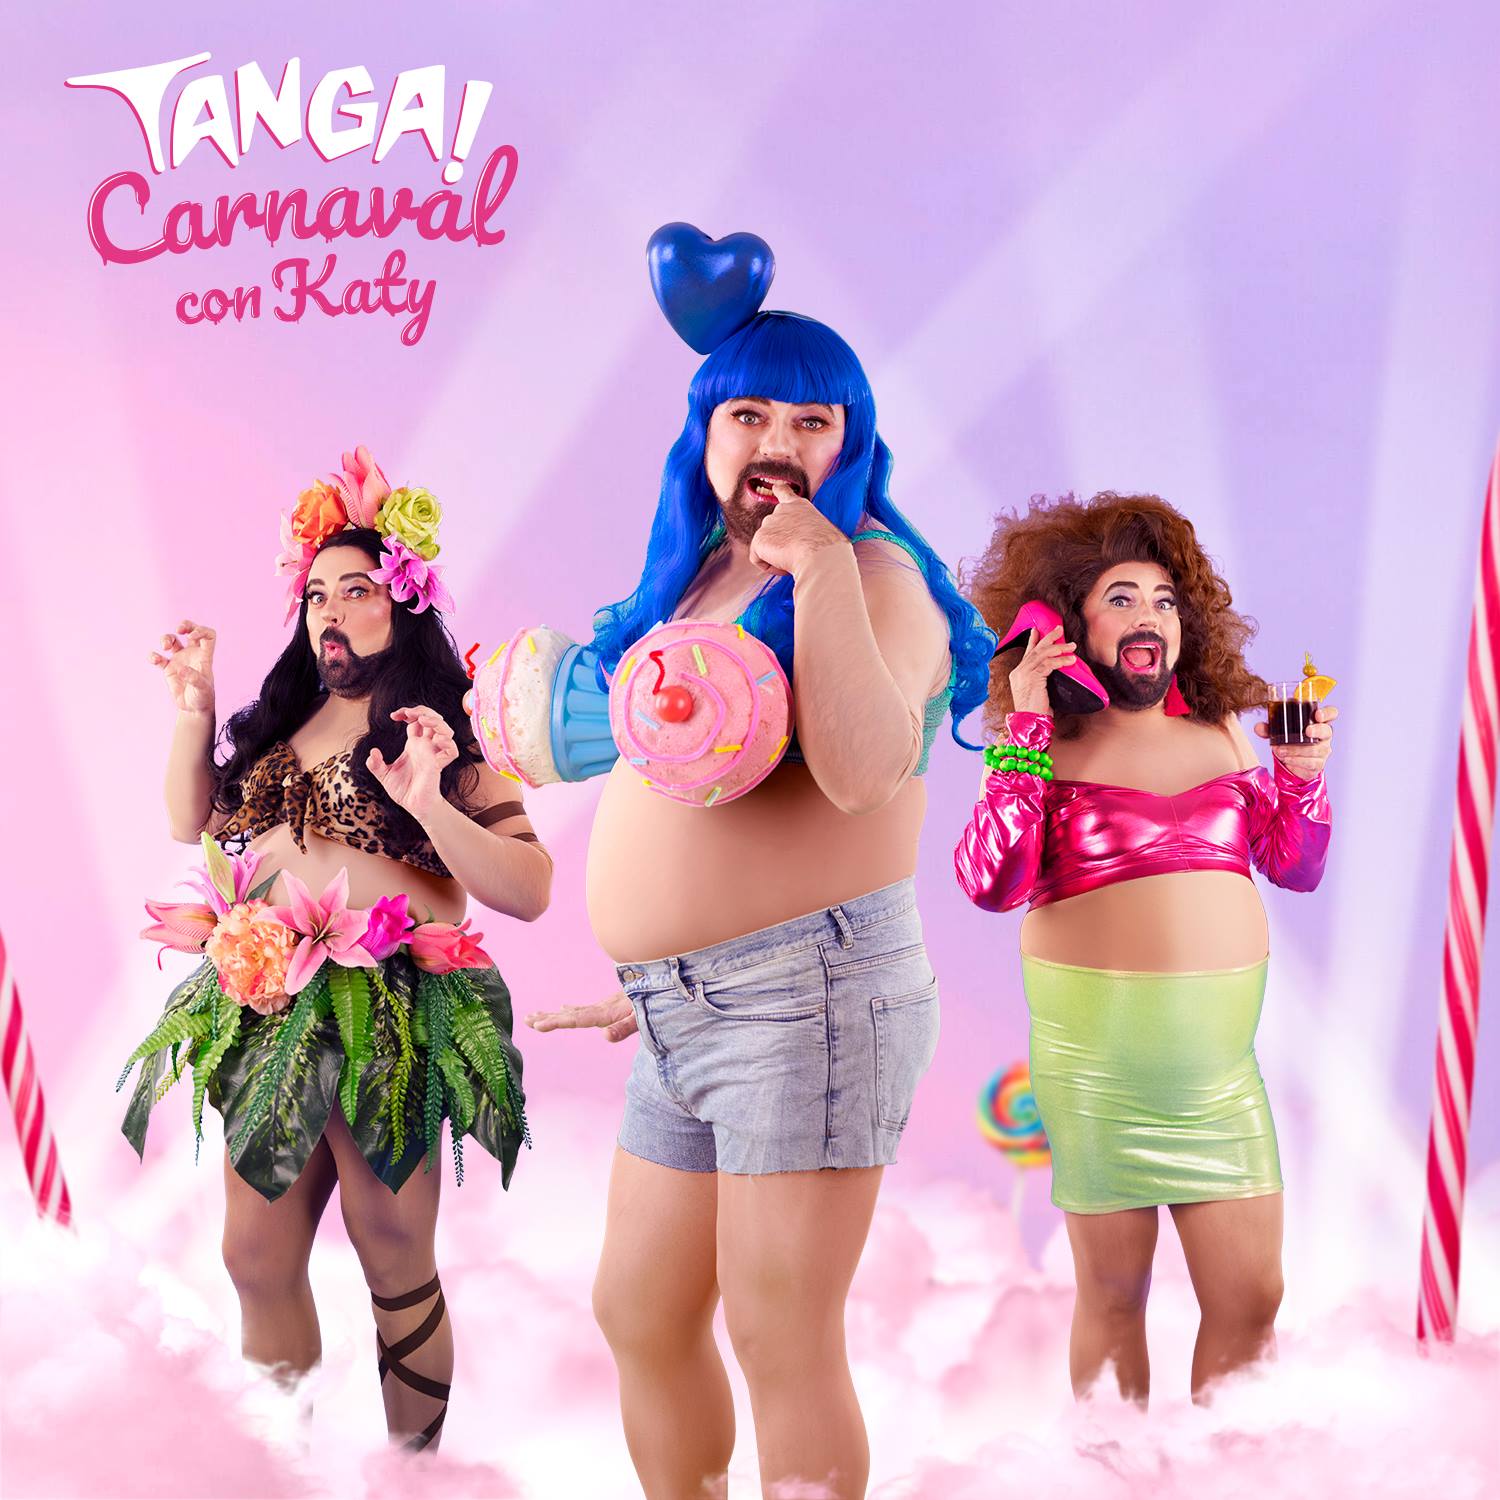 Imagen promocional del Tanga Party del pasado domingo, dedicado al carnaval y a la cantante Caty Perry - Tanga Party Facebook